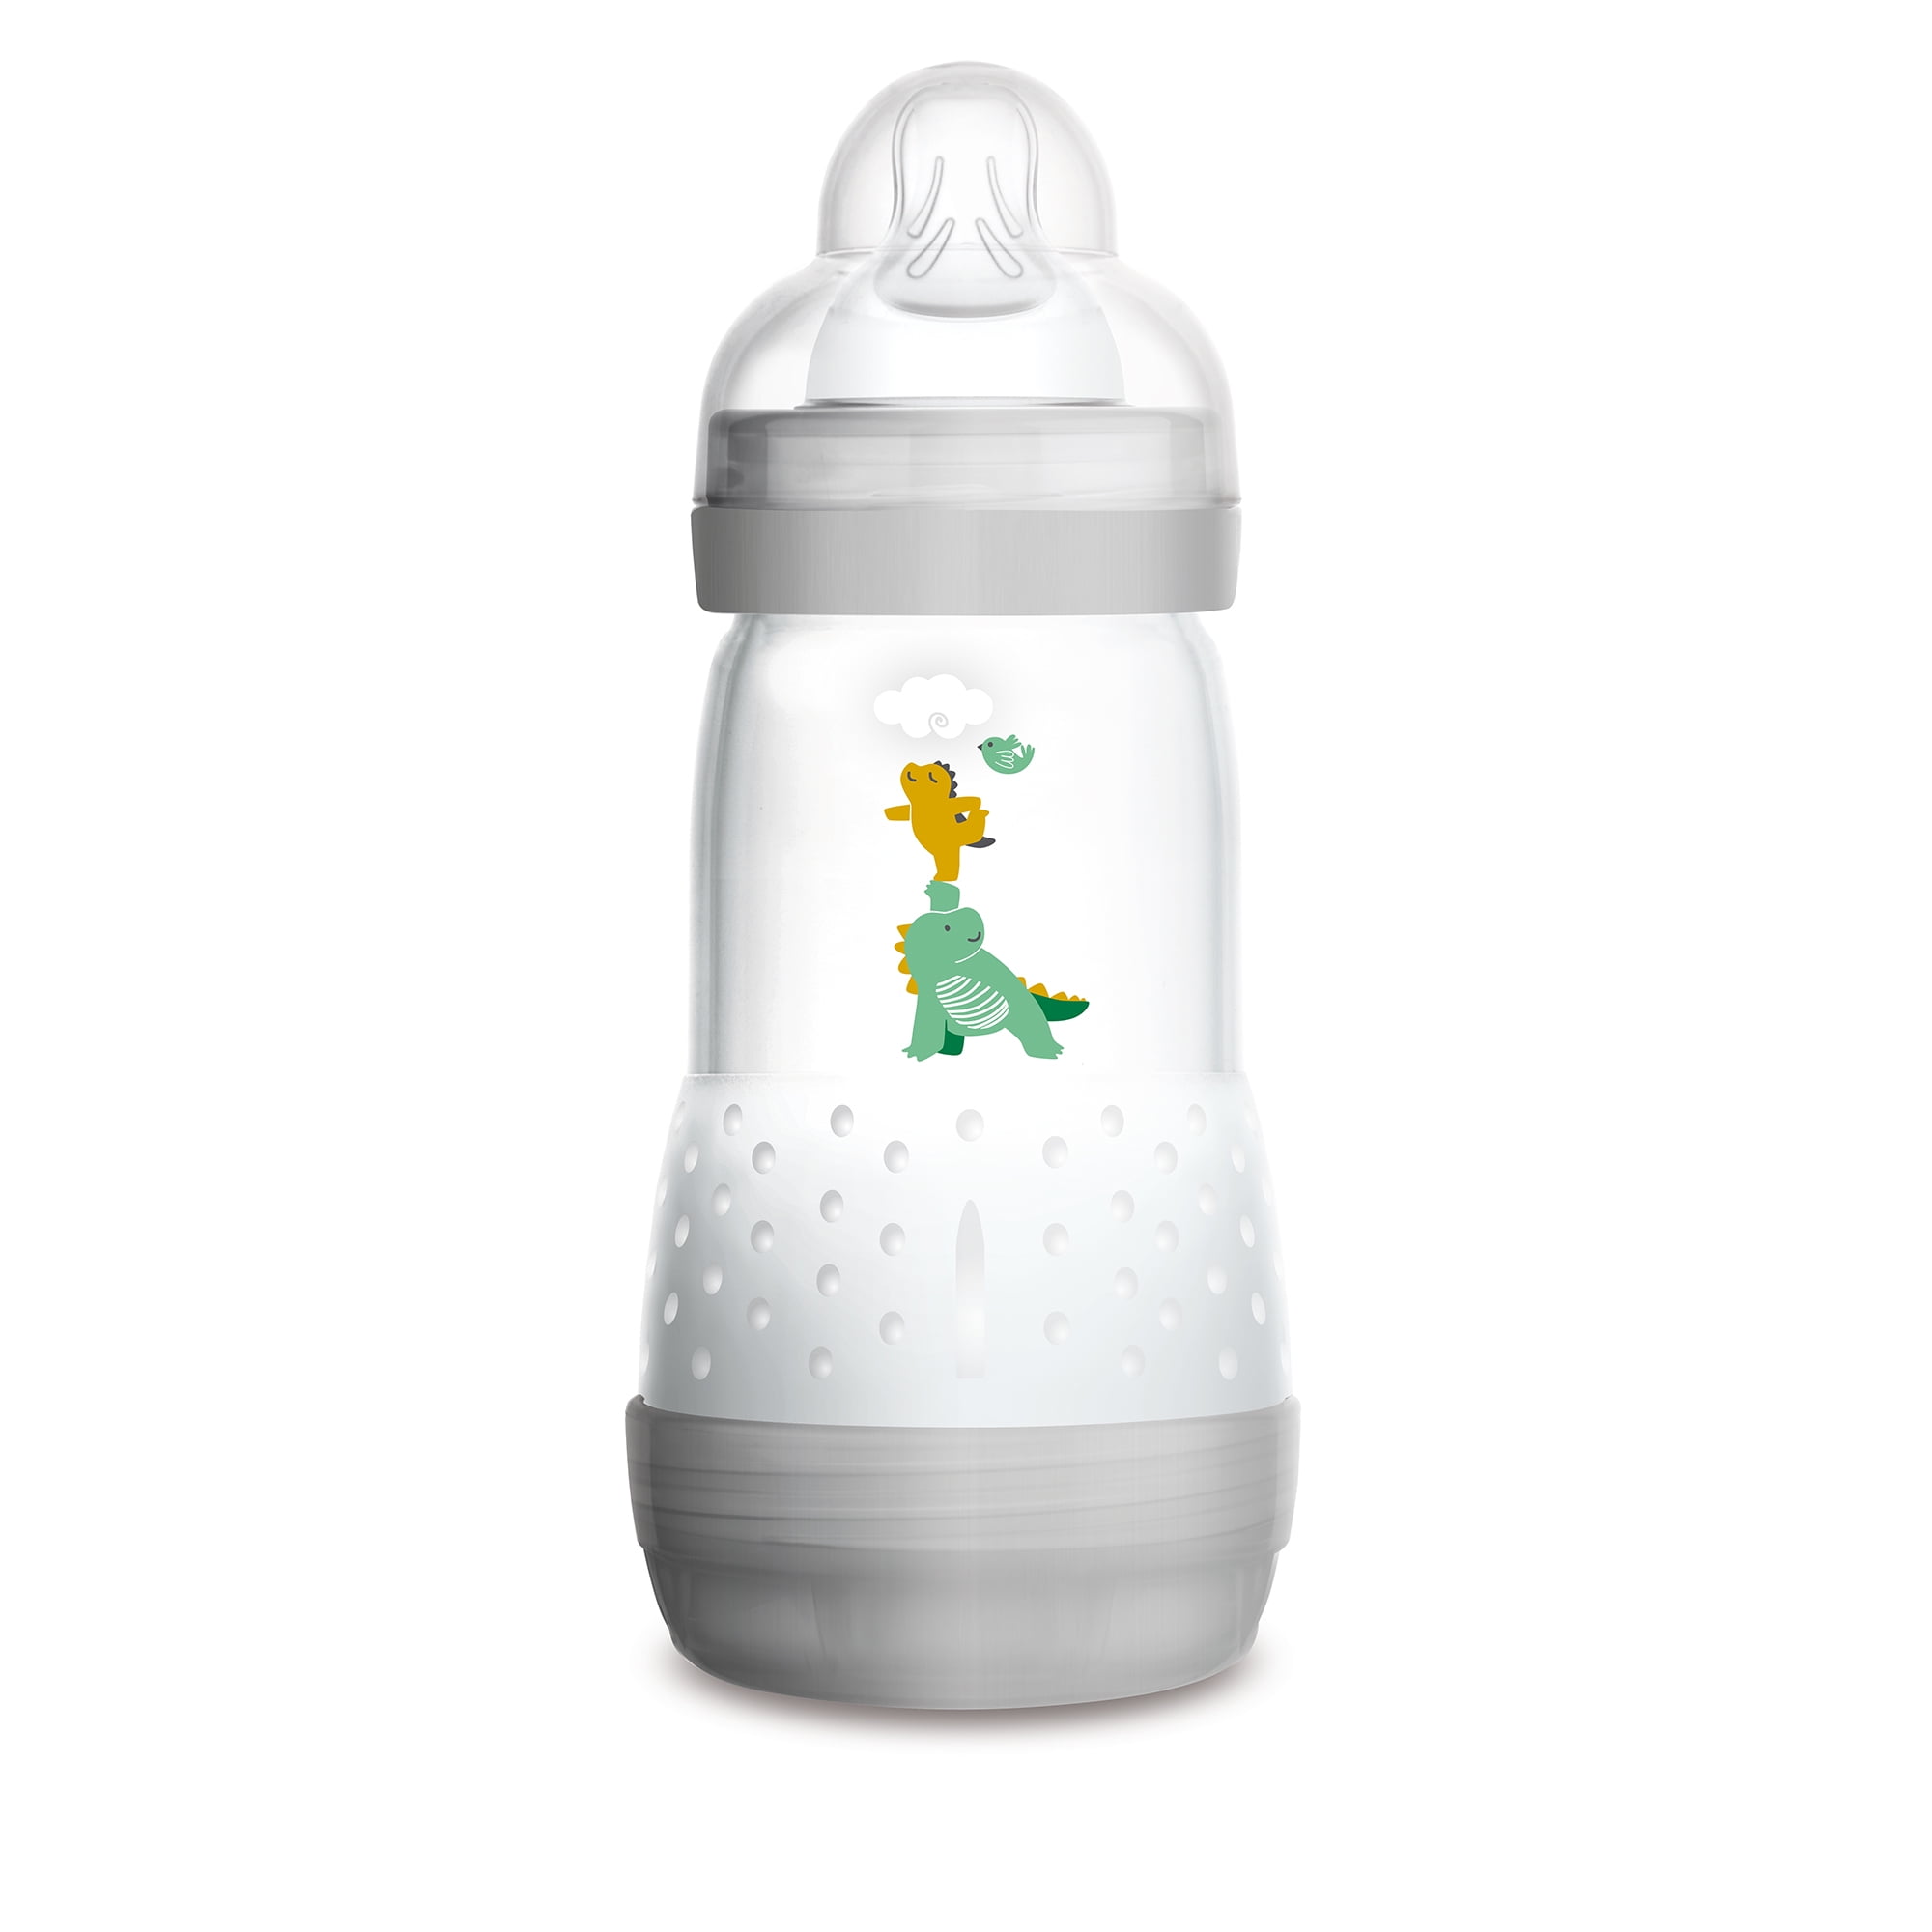 MAM Easy Start Bottle & Microwave Steriliser Set Newborn Feeding Gift/Kit 